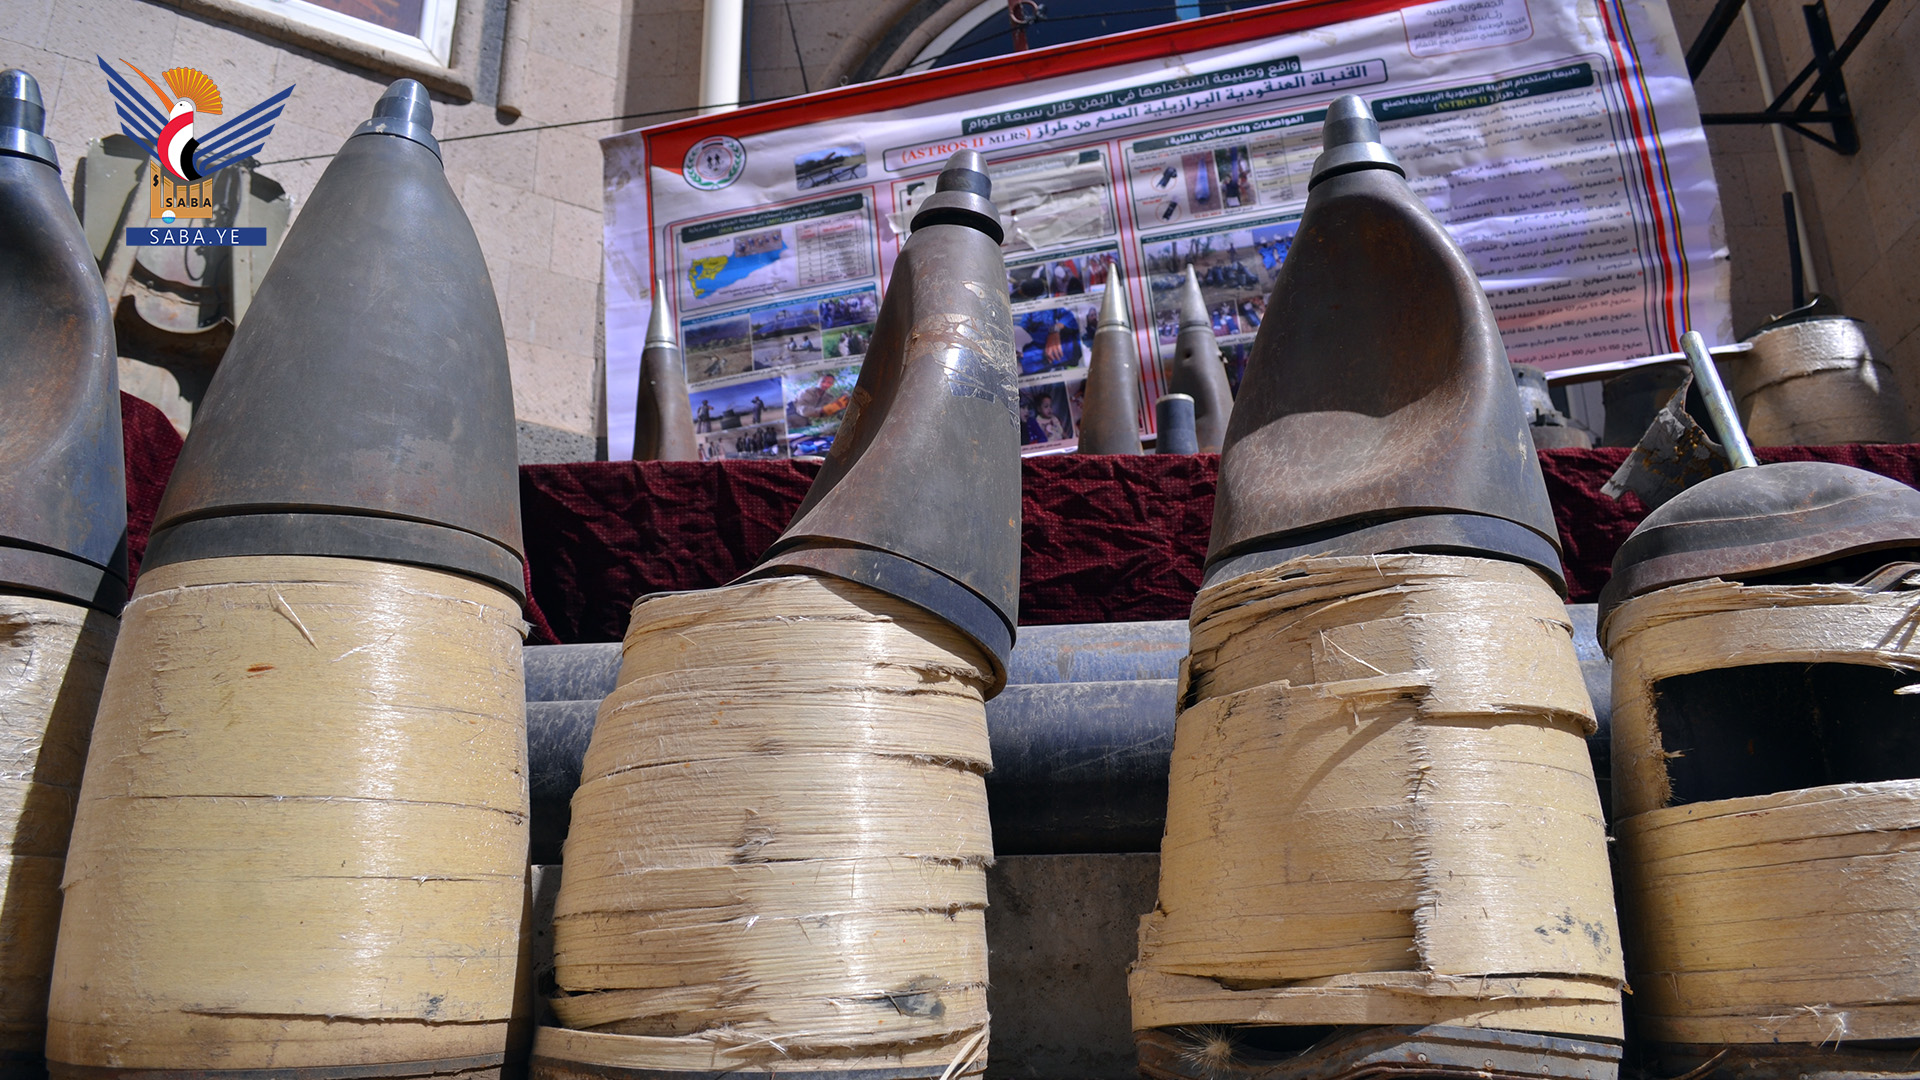 إطلاق تقرير "القنابل العنقودية ومخلفات العدوان" خلال مؤتمر صحفي بصنعاء